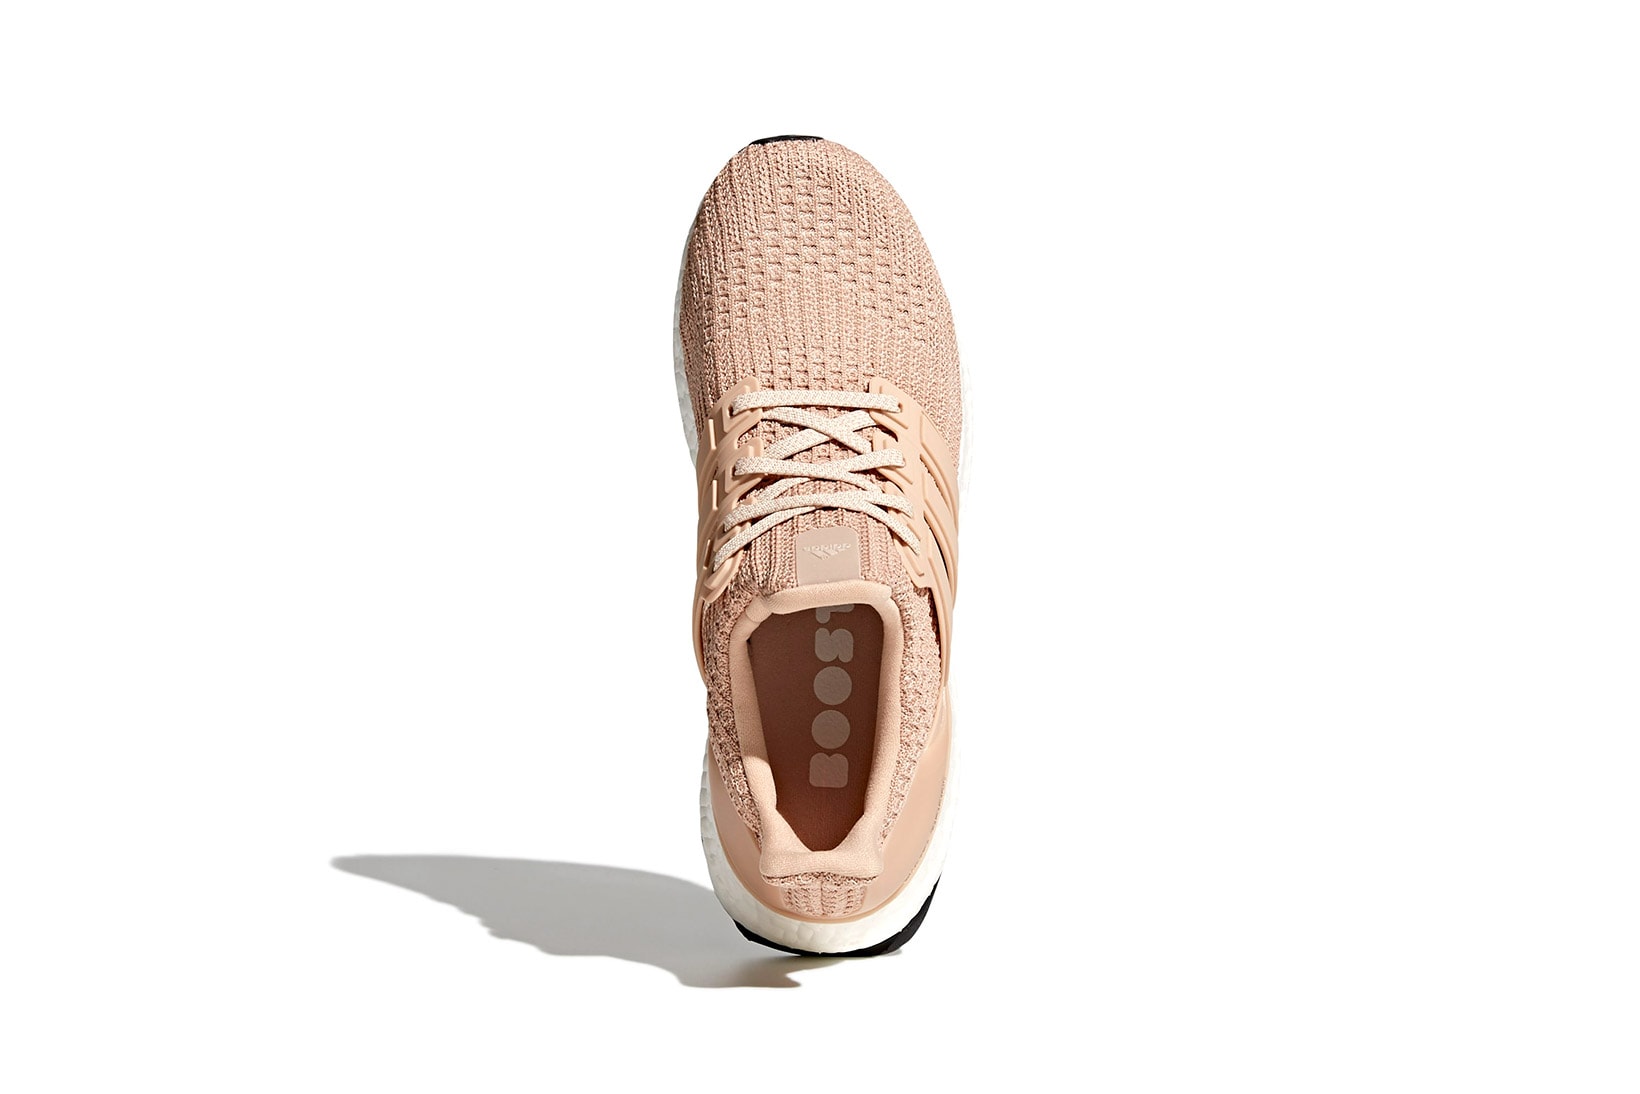 adidas ultraboost womens sneakers nude pink white colorway shoes footwear sneakerhead